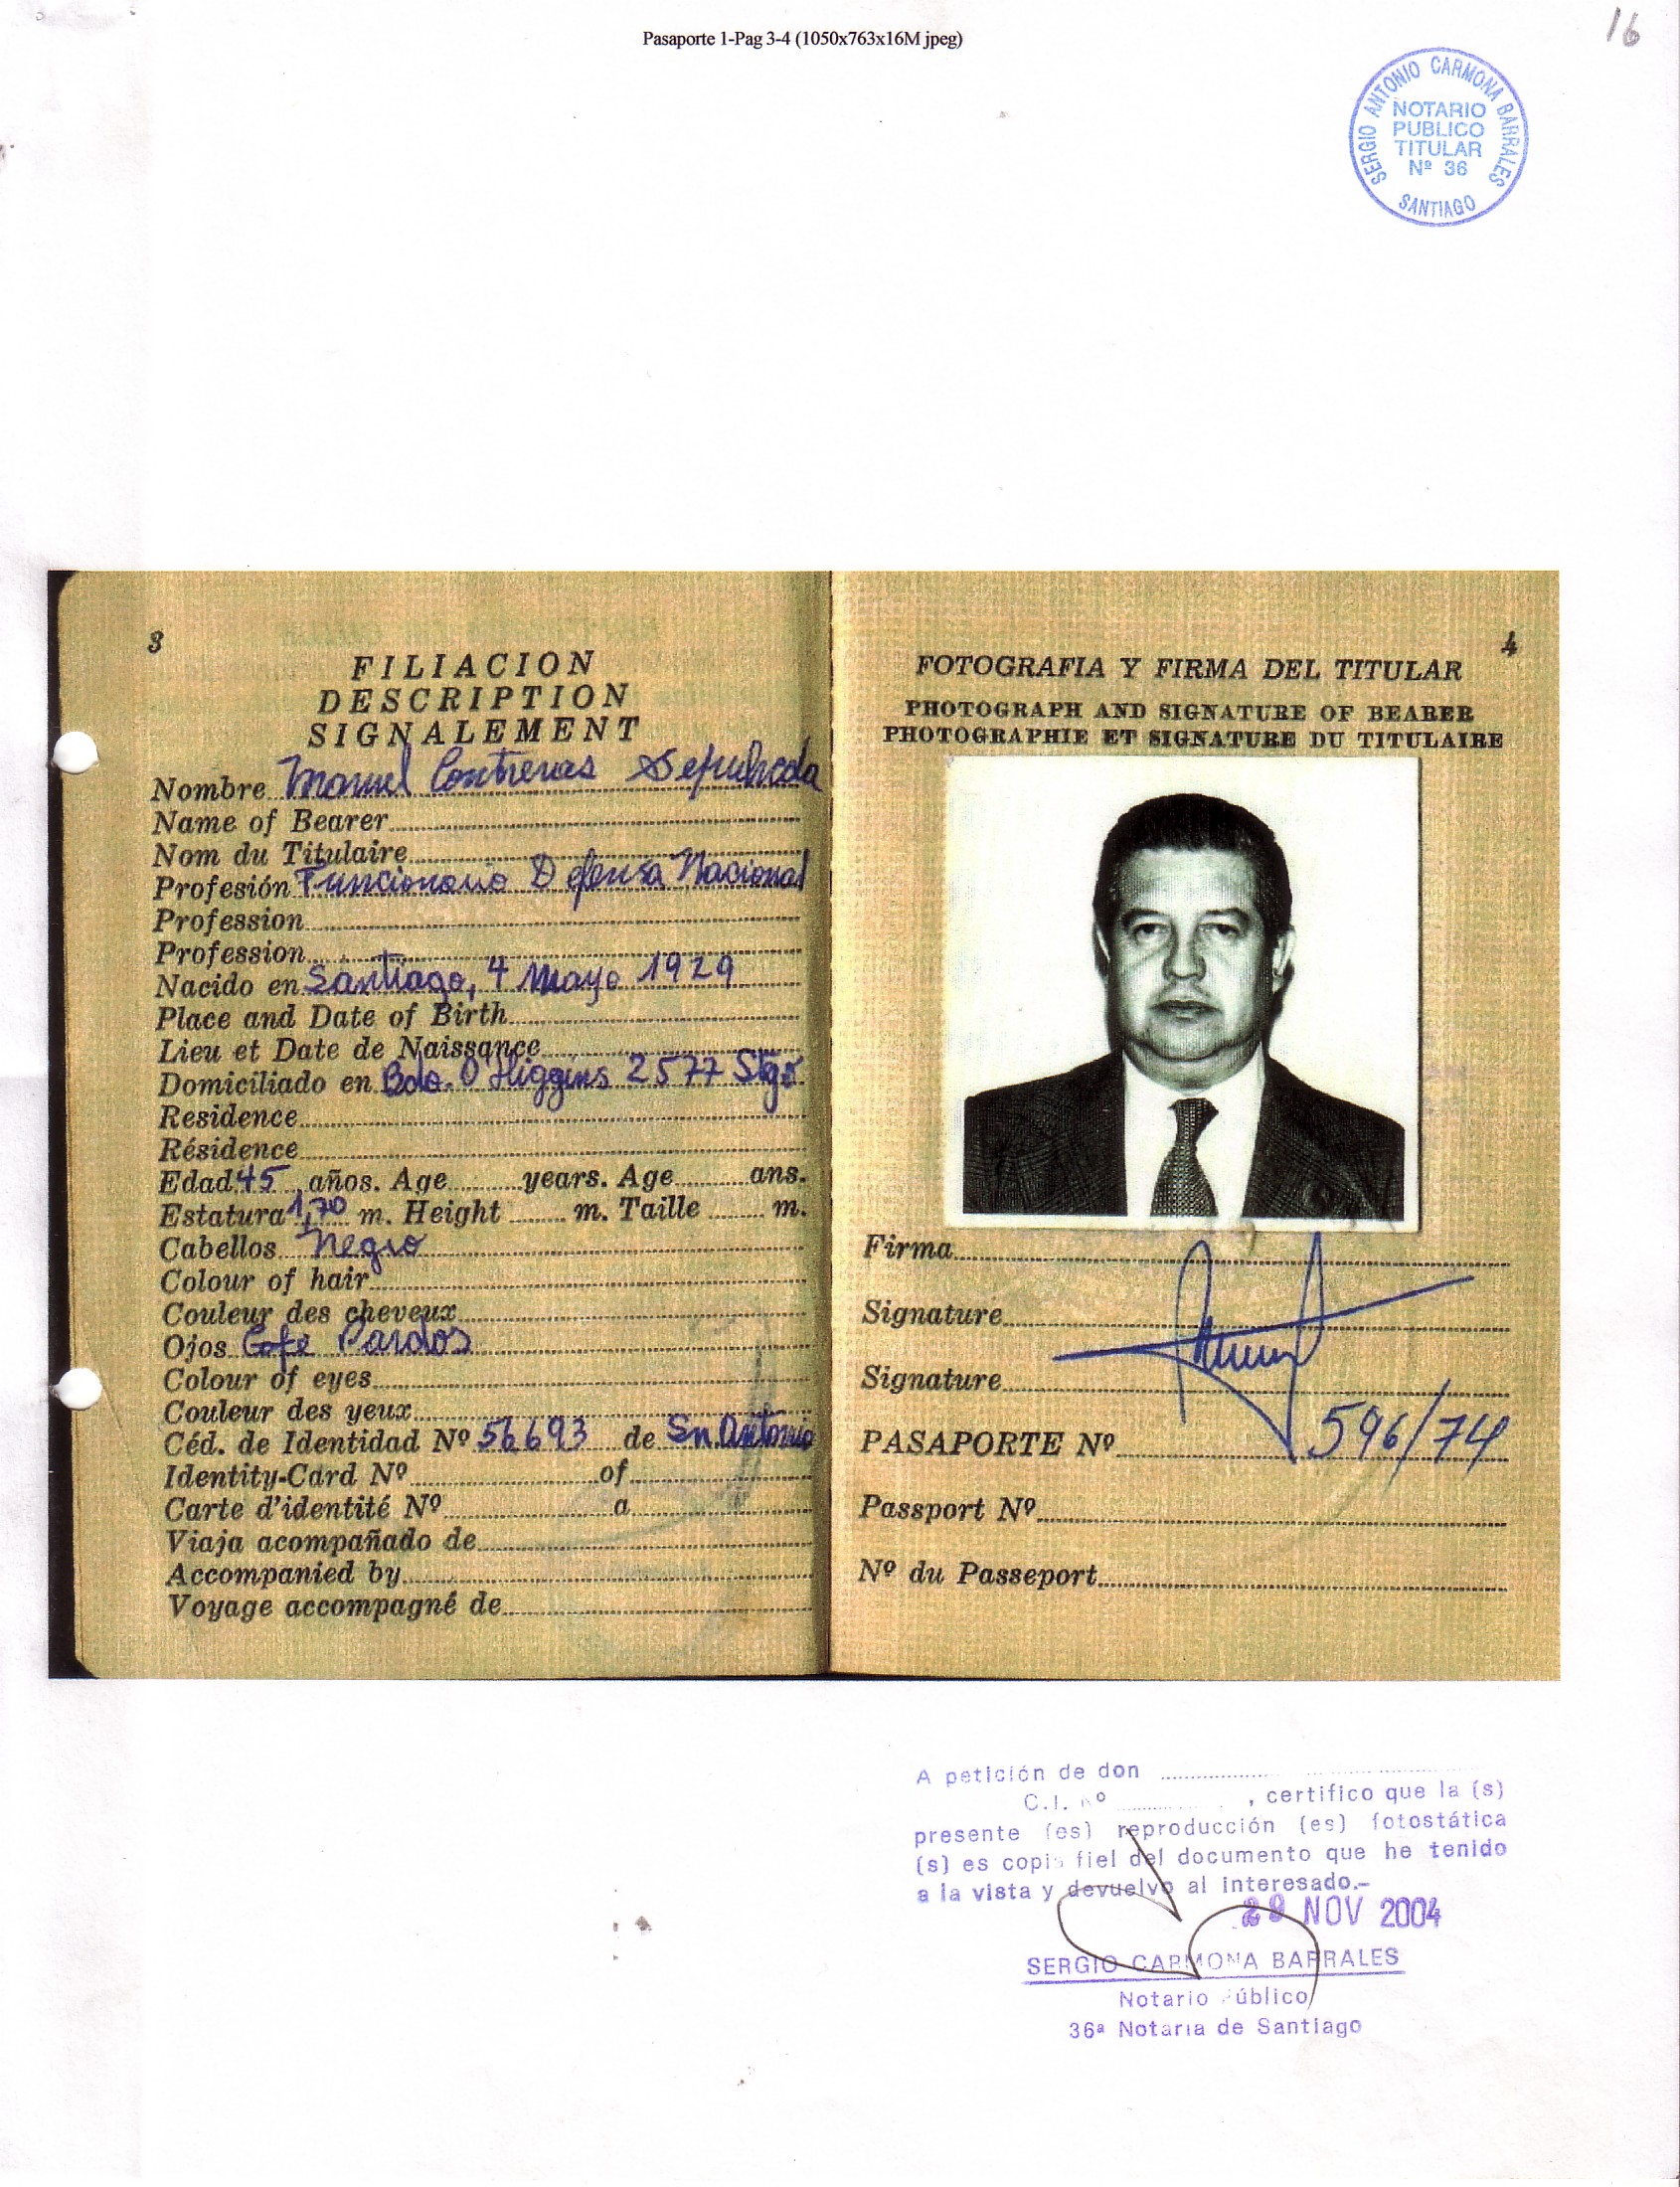 Documento gráfico: El pasaporte del “Mamo” Contreras